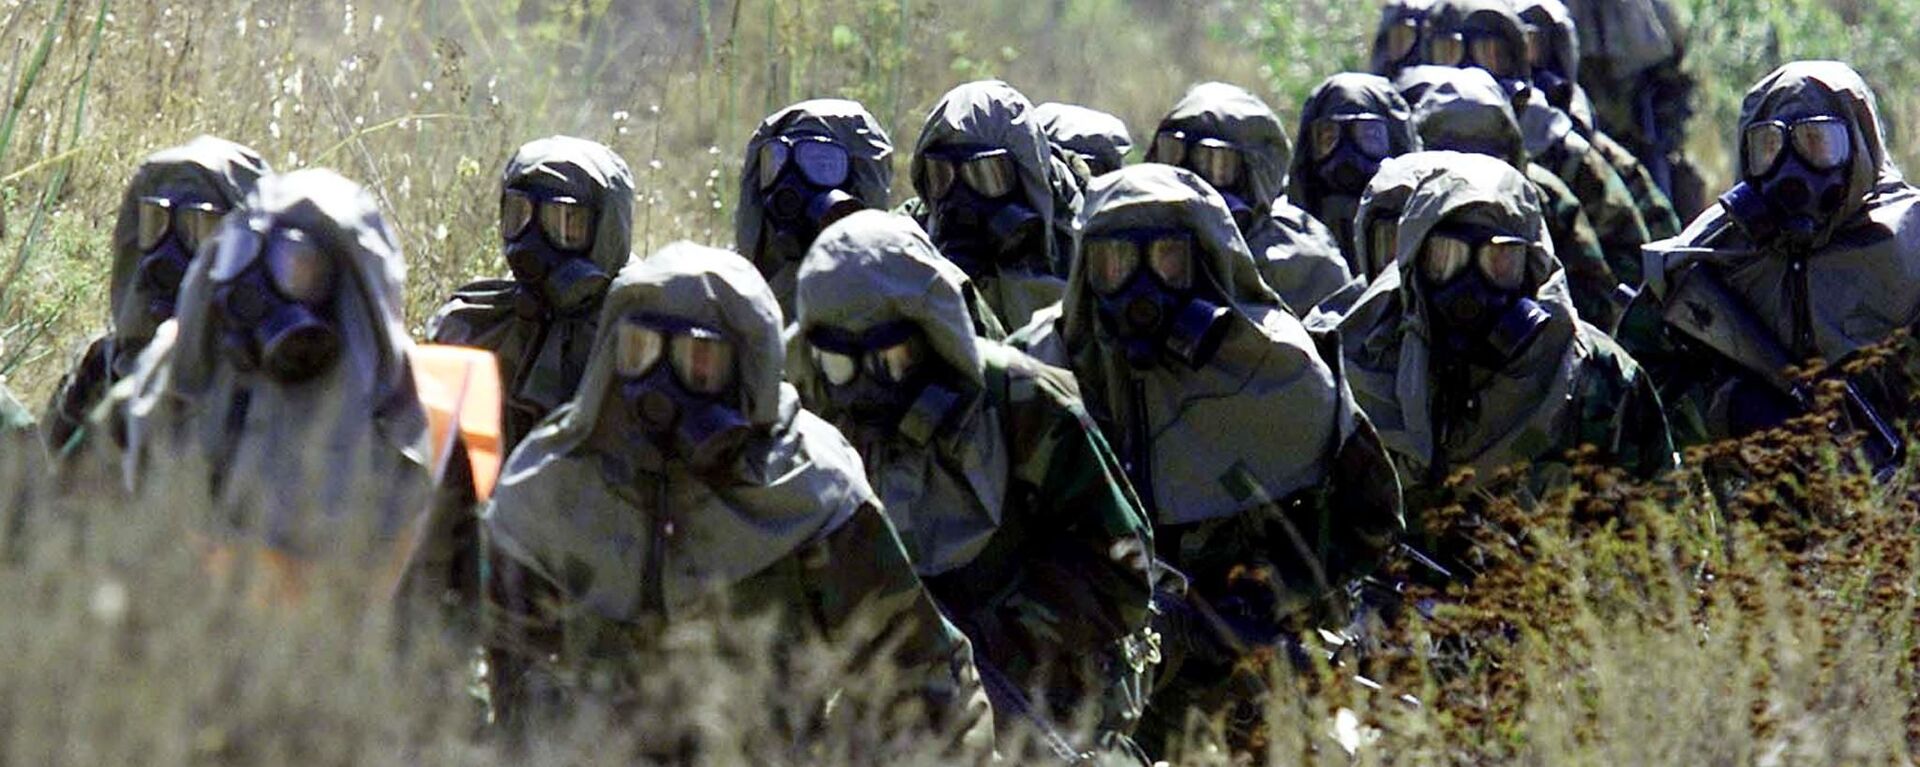 پلان امریکا برای استفاده از سلاح های بیولوژیکی در کوبا فاش شد - اسپوتنیک افغانستان  , 1920, 29.10.2017